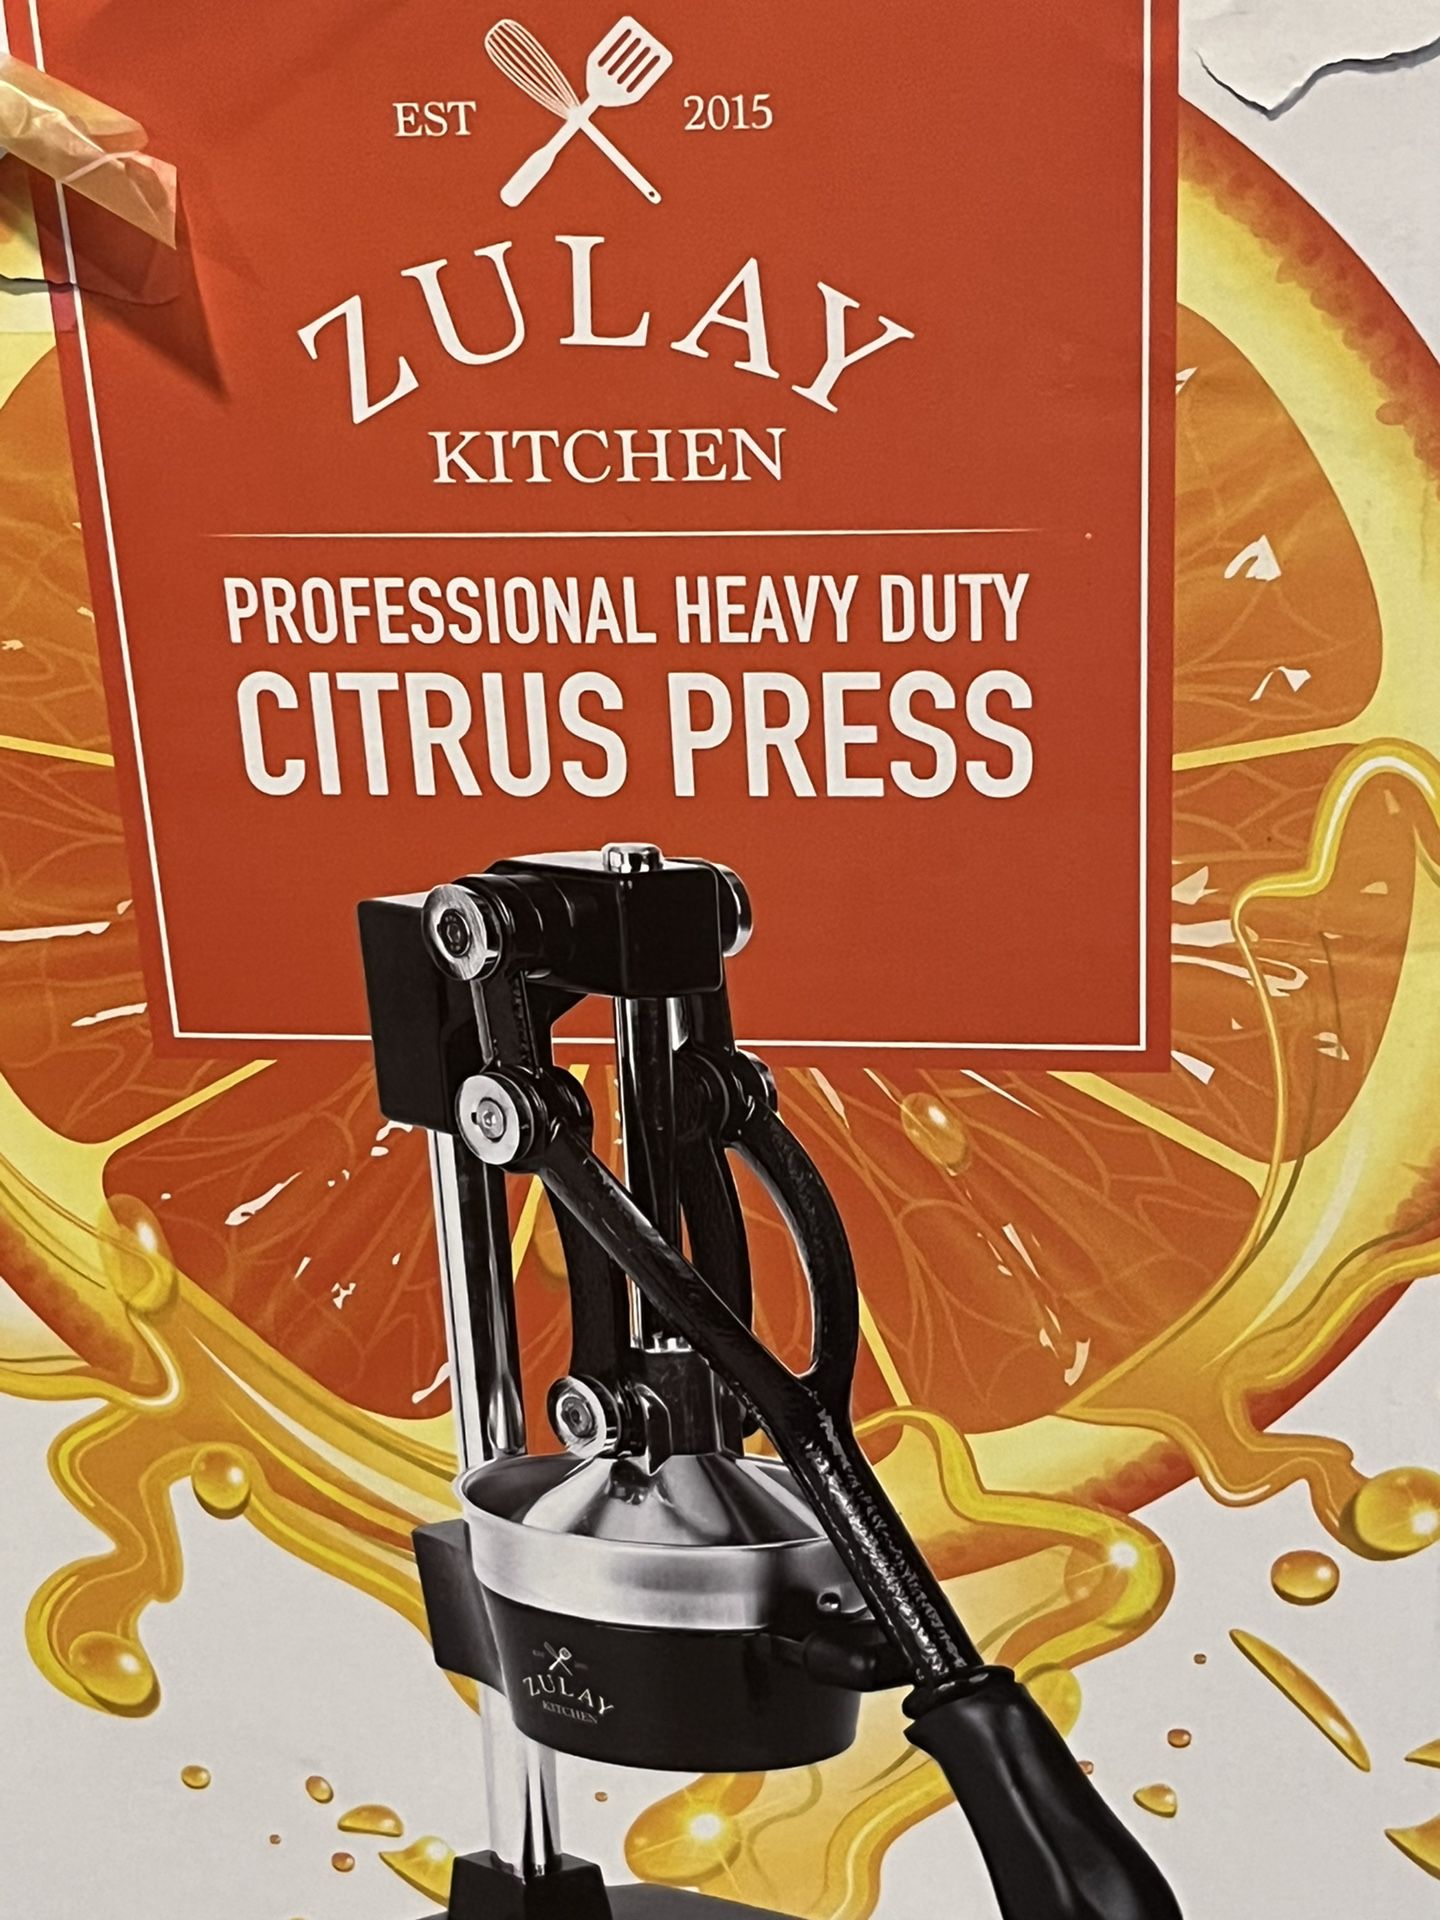 Citrus press